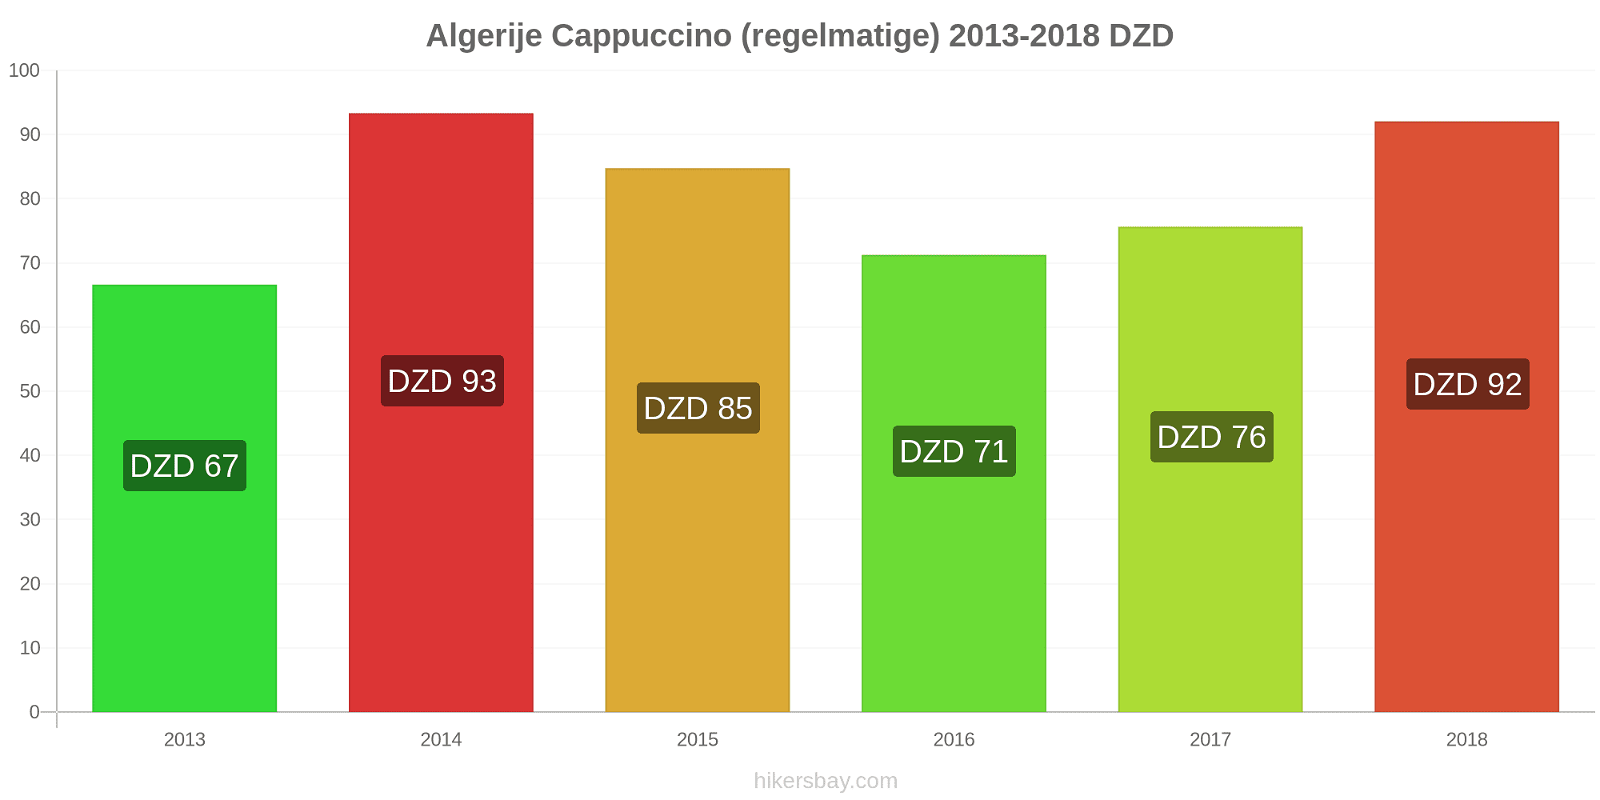 Algerije prijswijzigingen Cappuccino (regulier) hikersbay.com